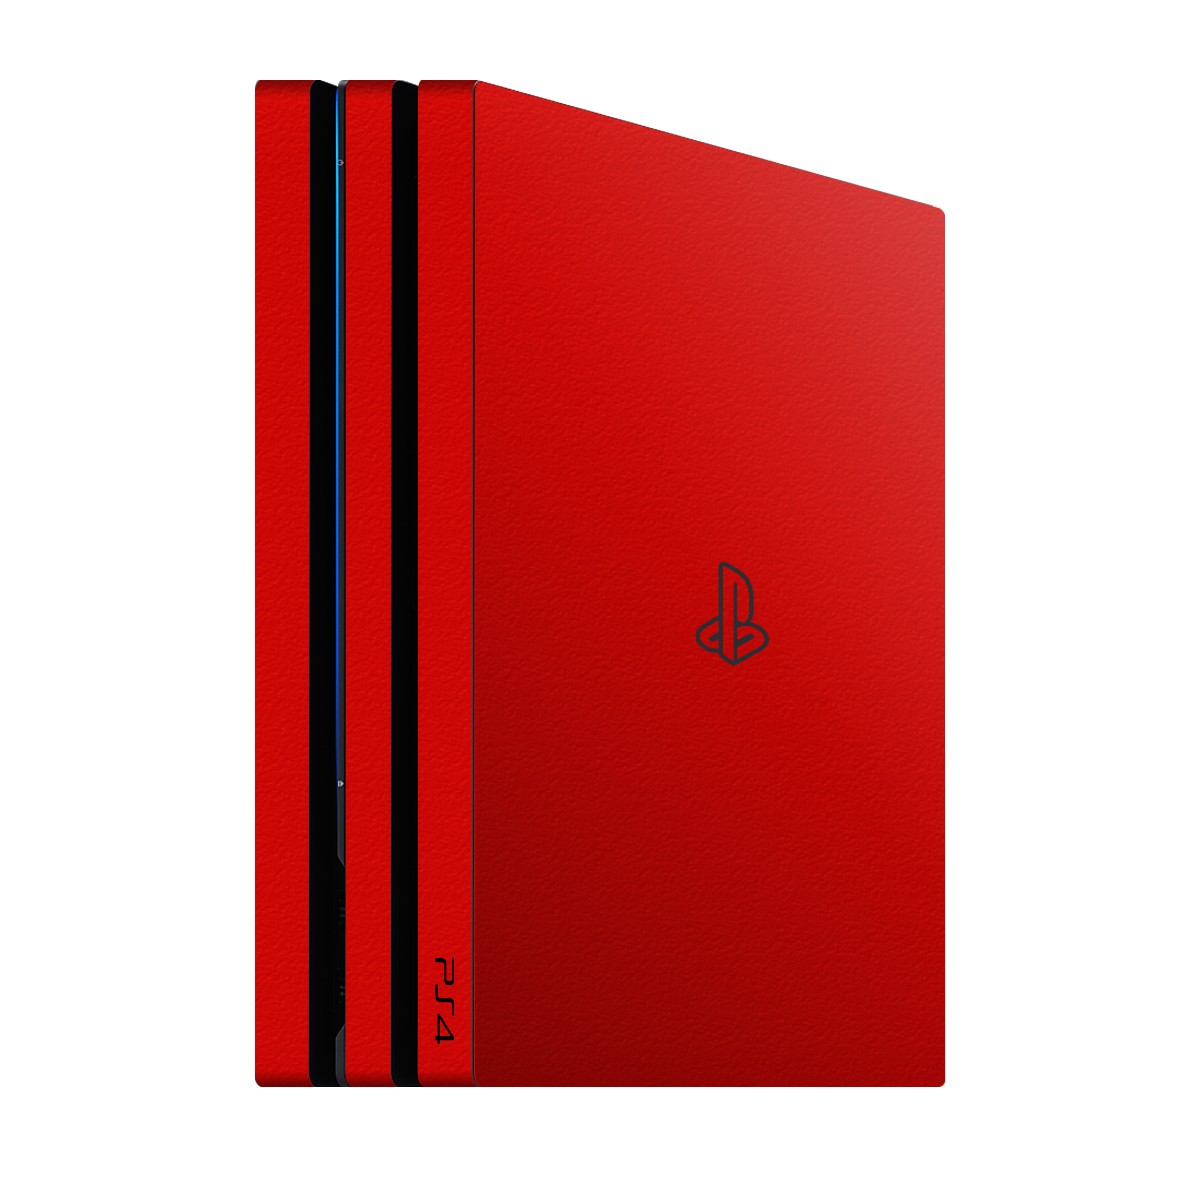 PlayStation 4 Pro Kaplama Kırmızı